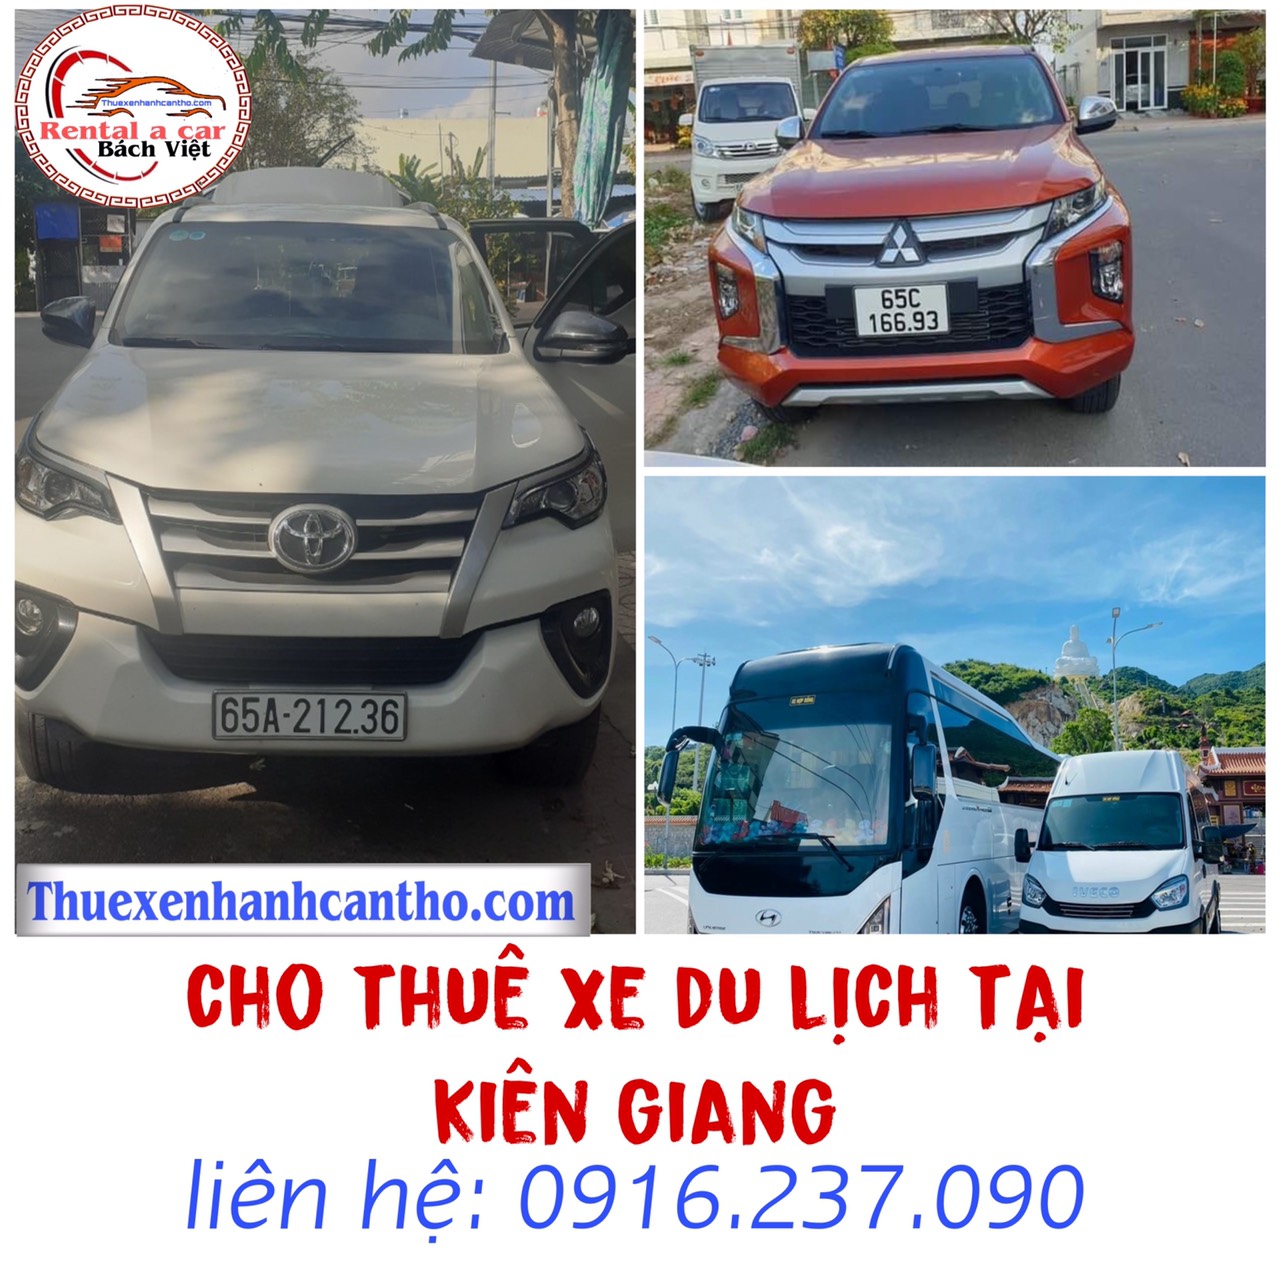 Cho thuê xe du lịch tại Kiên Giang